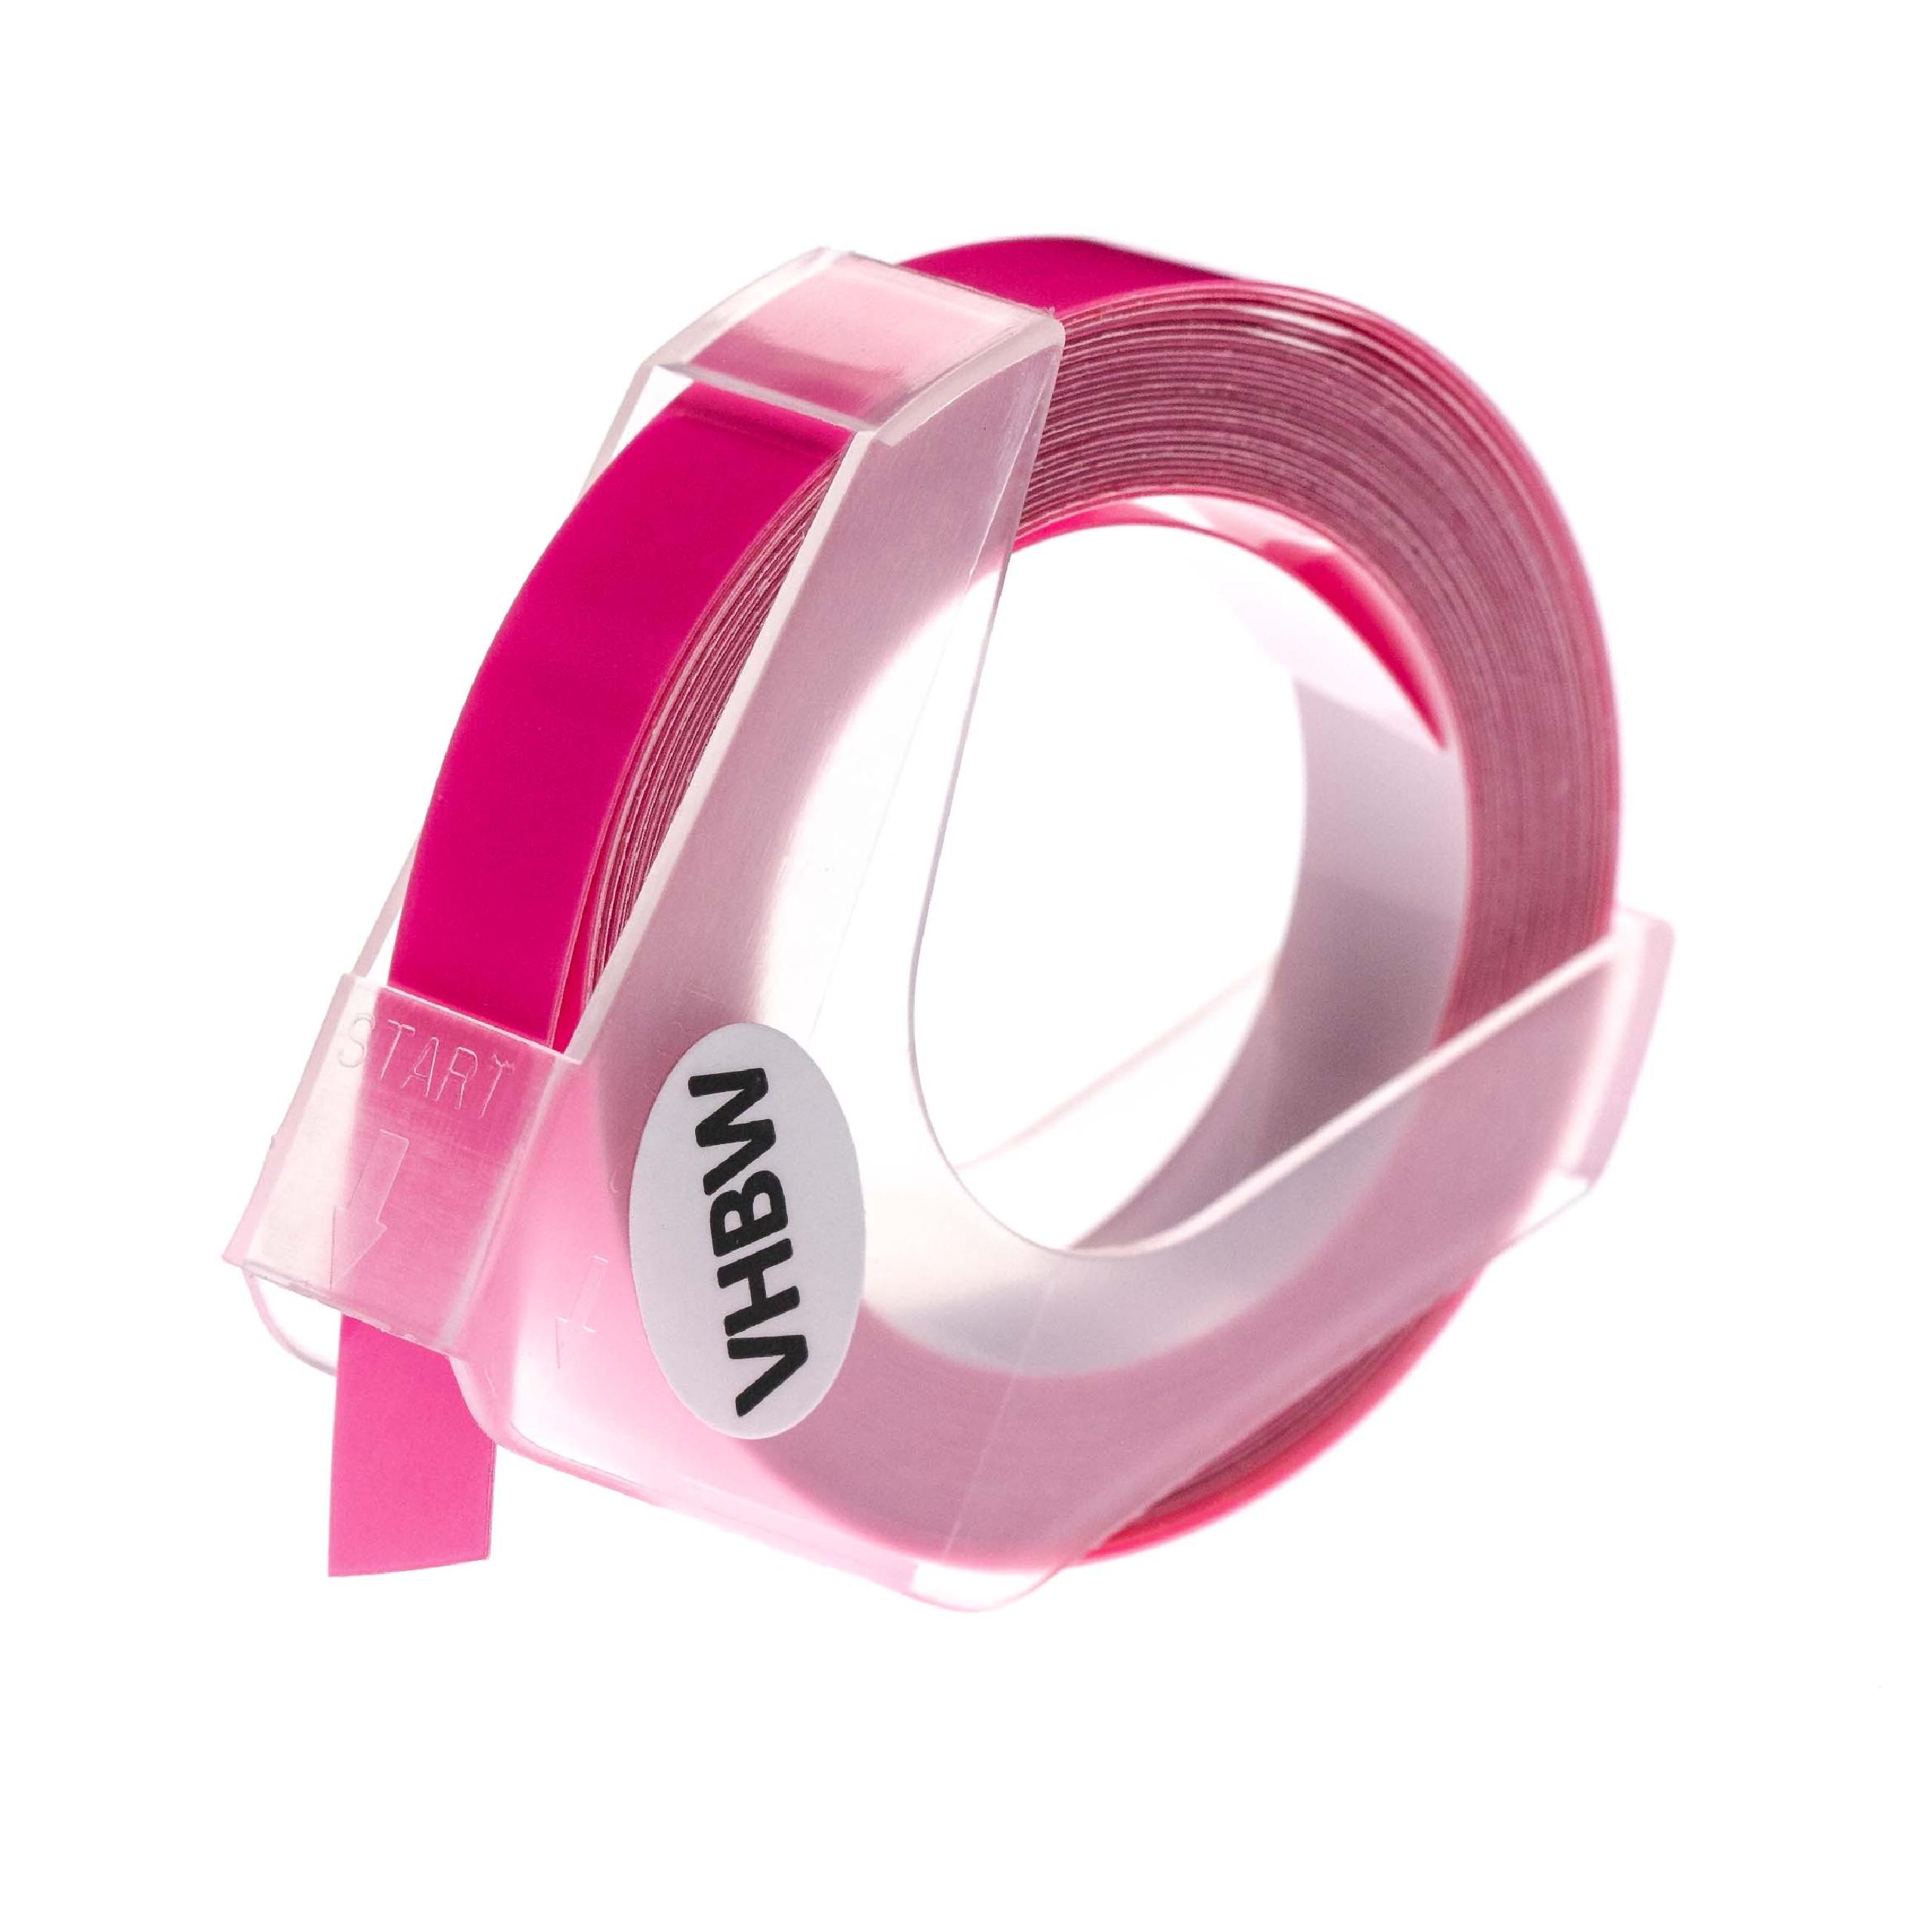 Nastro goffratura 3D sostituisce Dymo 0898280, S0898280 per etichettatrice Motex 9mm bianco su rosa fluo